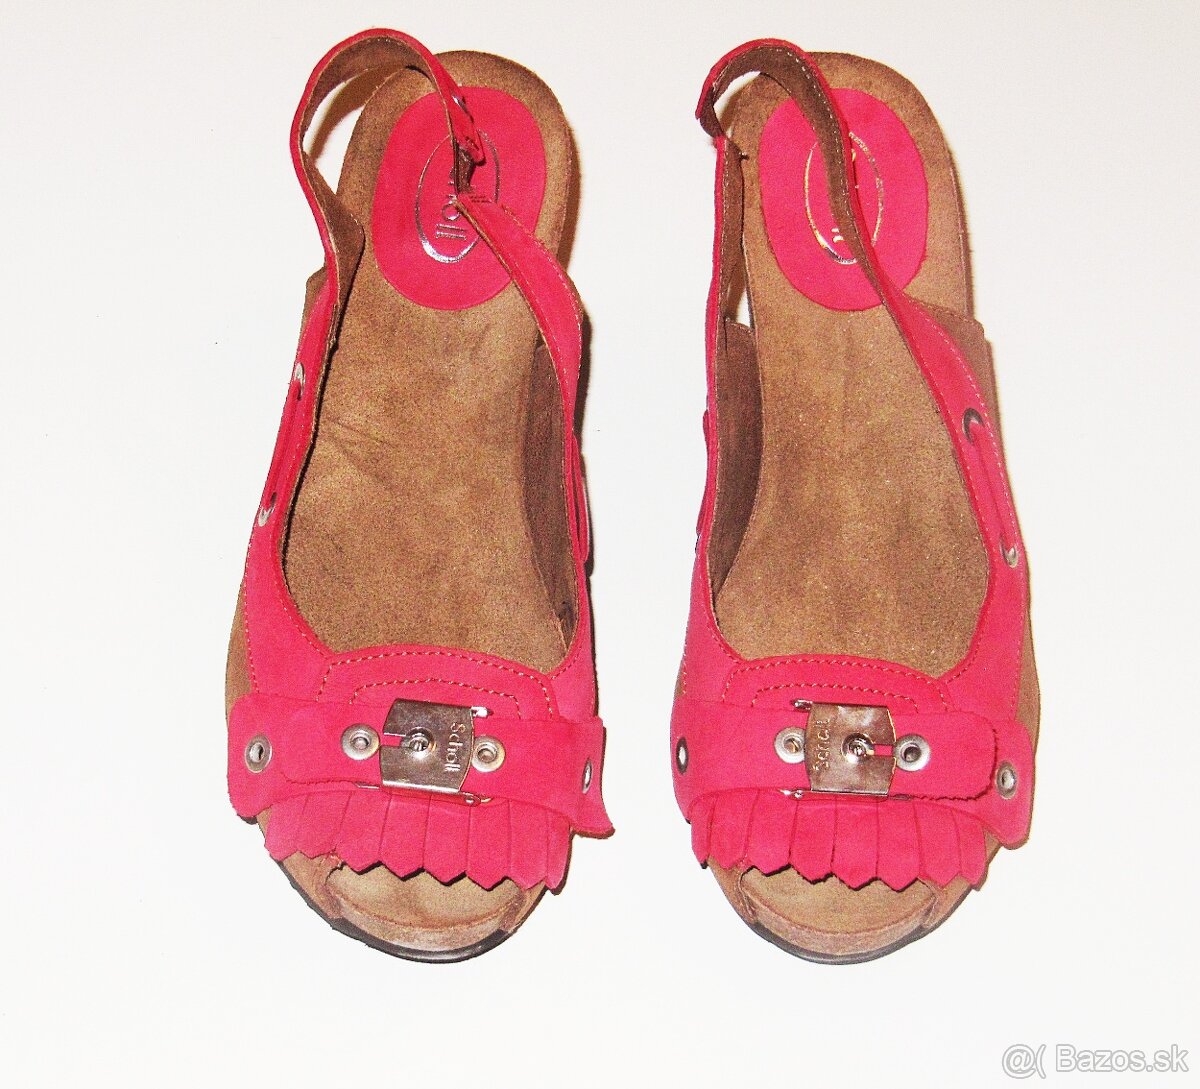 Topánky Scholl - veľkosť 39 a 38, červené a tyrkys, dámske